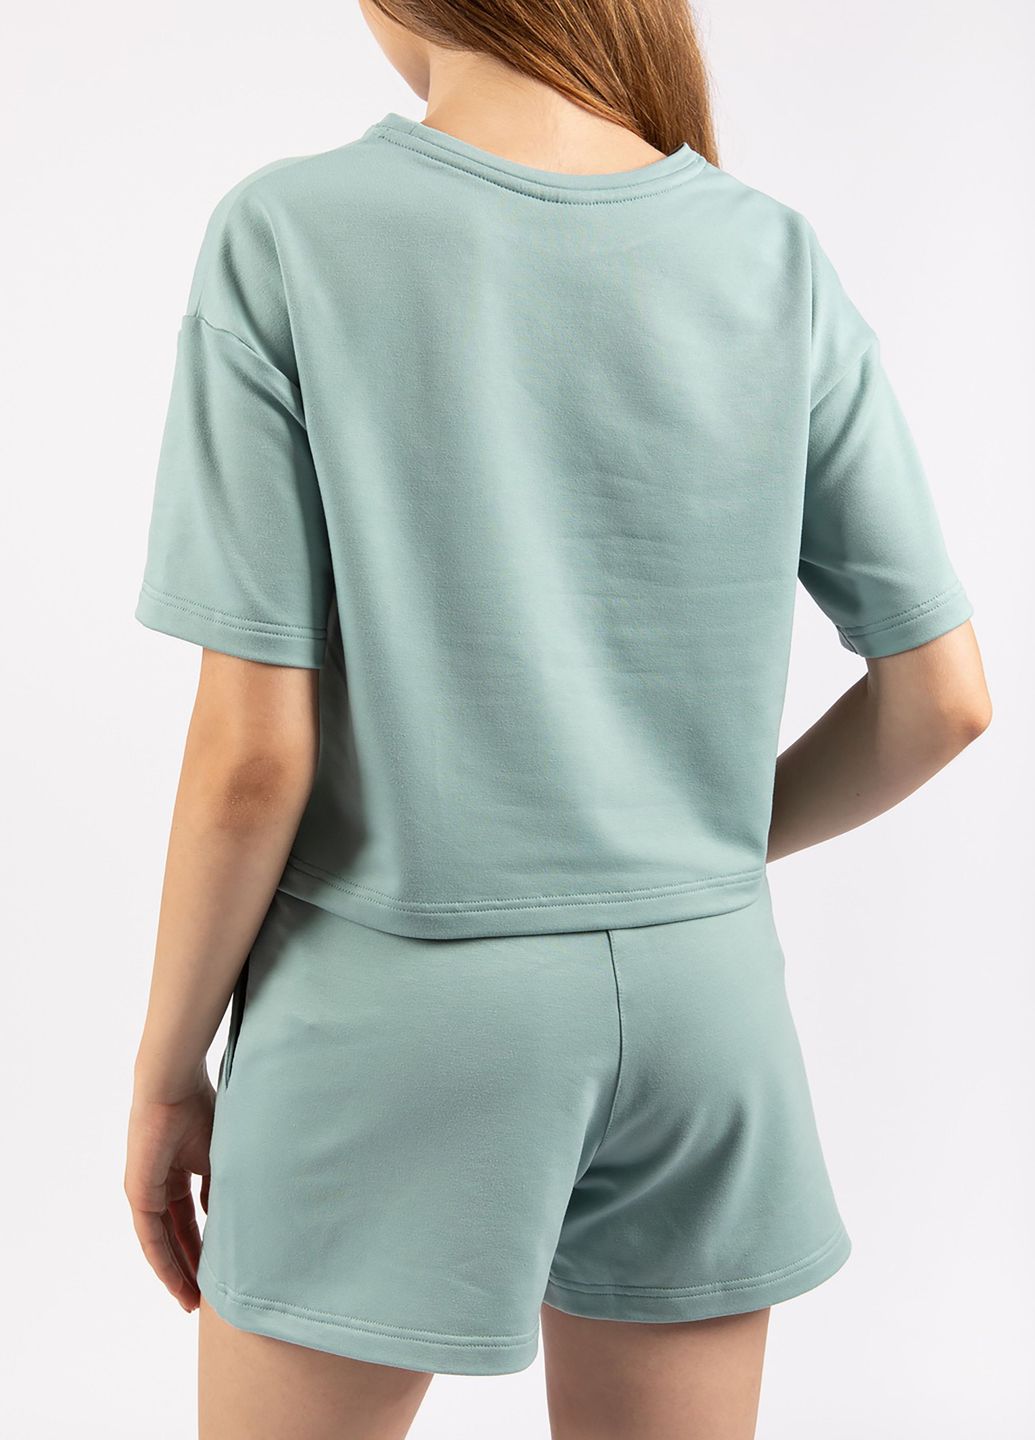 Купить Оверсайз футболка женская Merlini Нарбон 800000004 - Зелёный, 42-44 в интернет-магазине